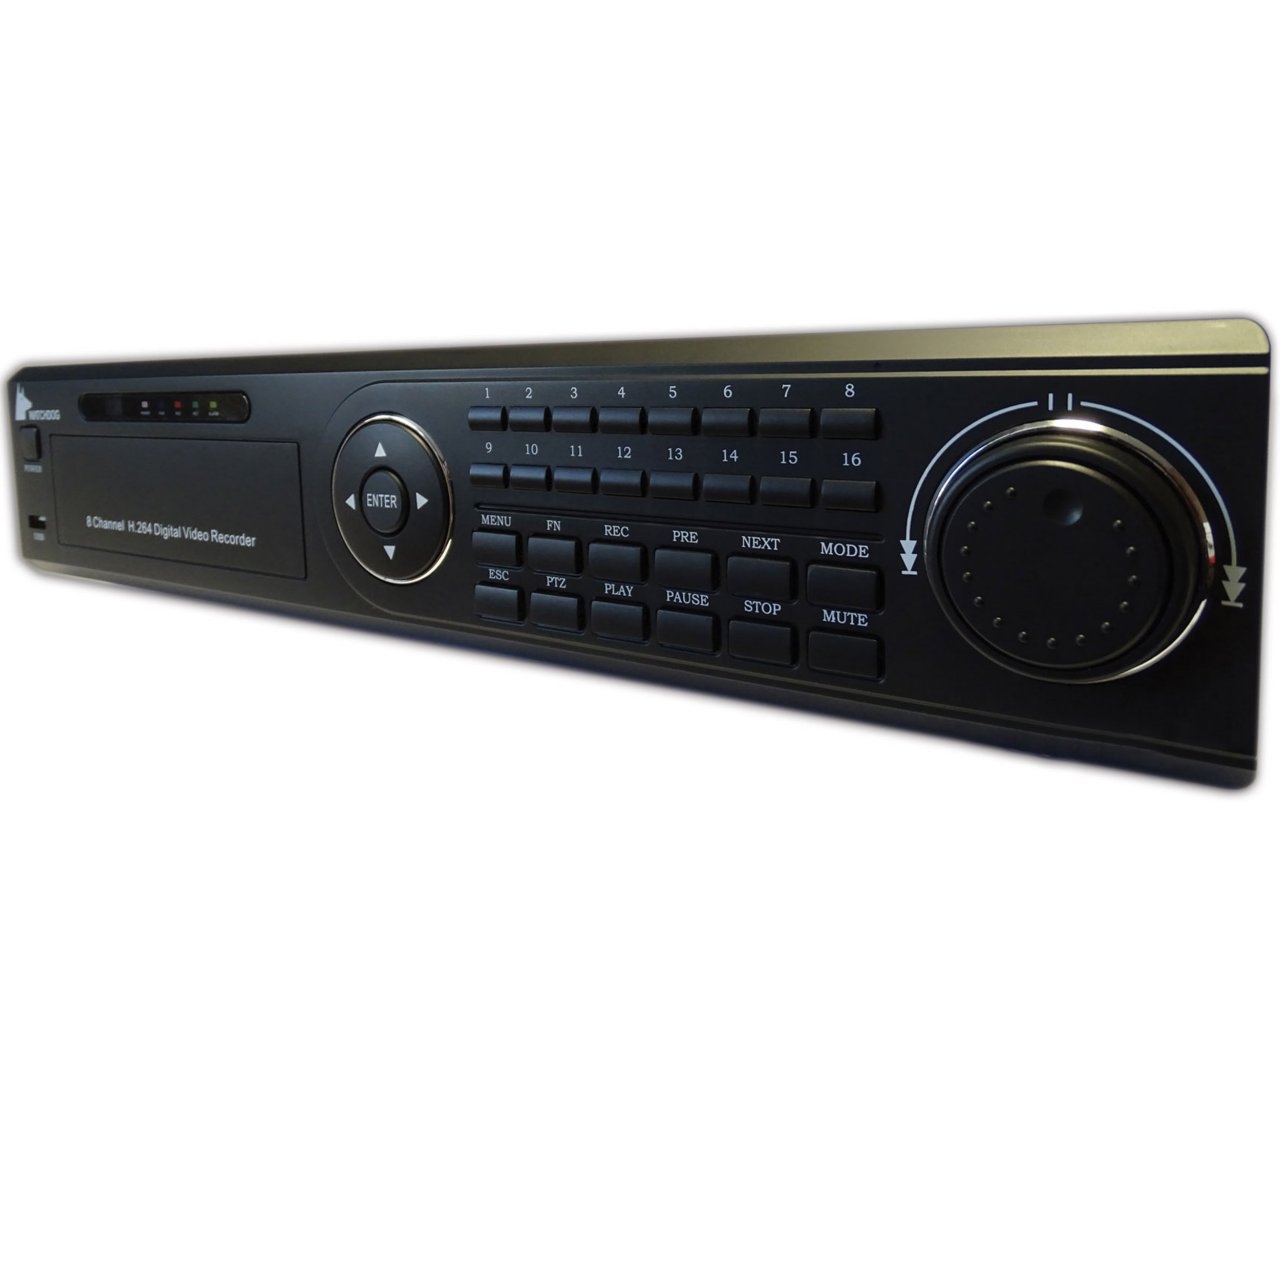 ضبط کننده ویدیویی DVR واچ داگ مدل WD-8008DHZ